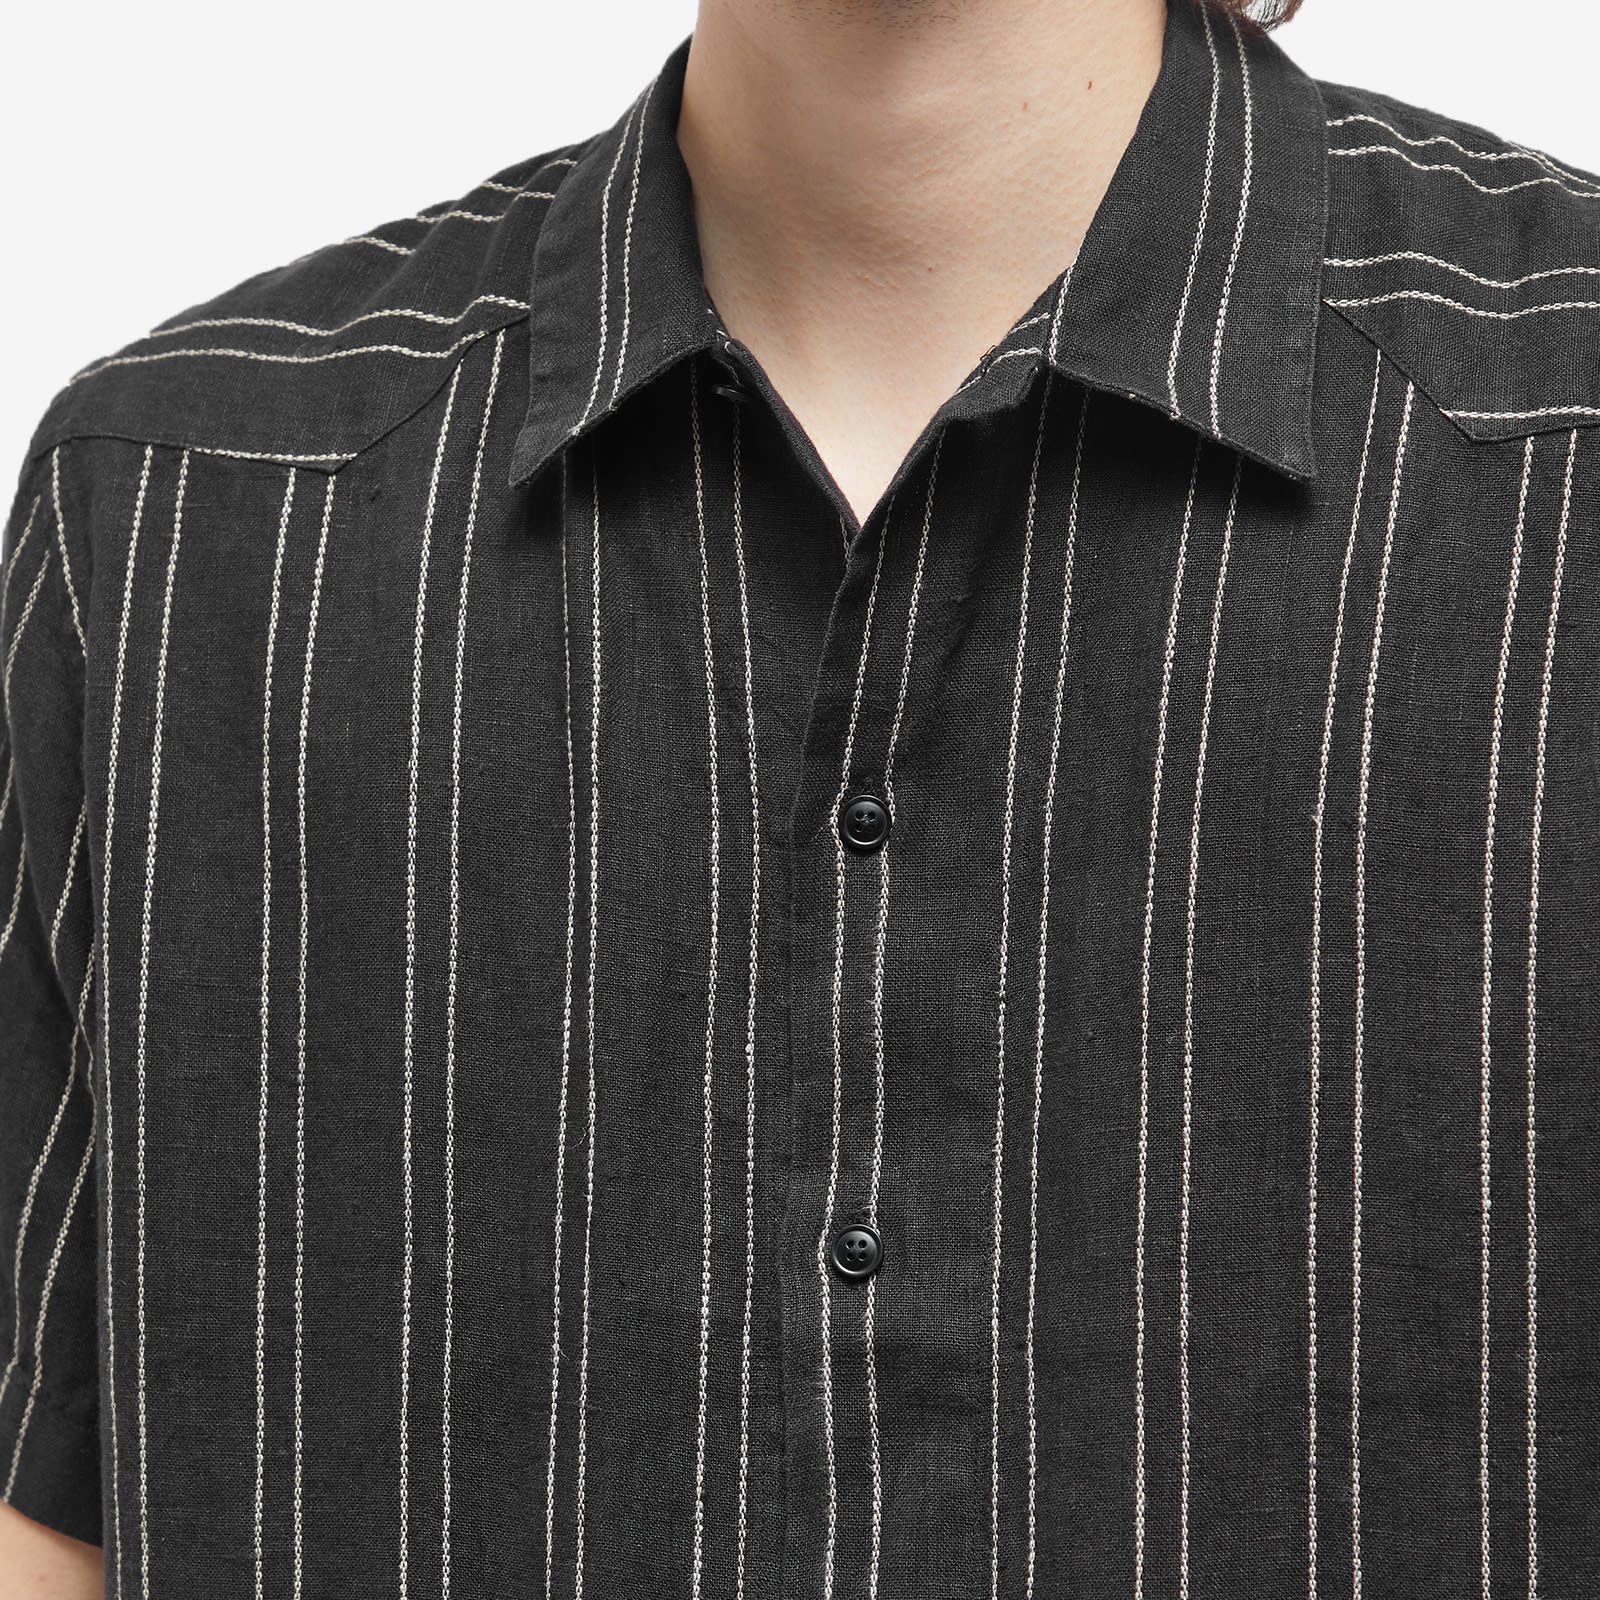 Oliver Spencer Cuban Short Sleeve Shirt - 5